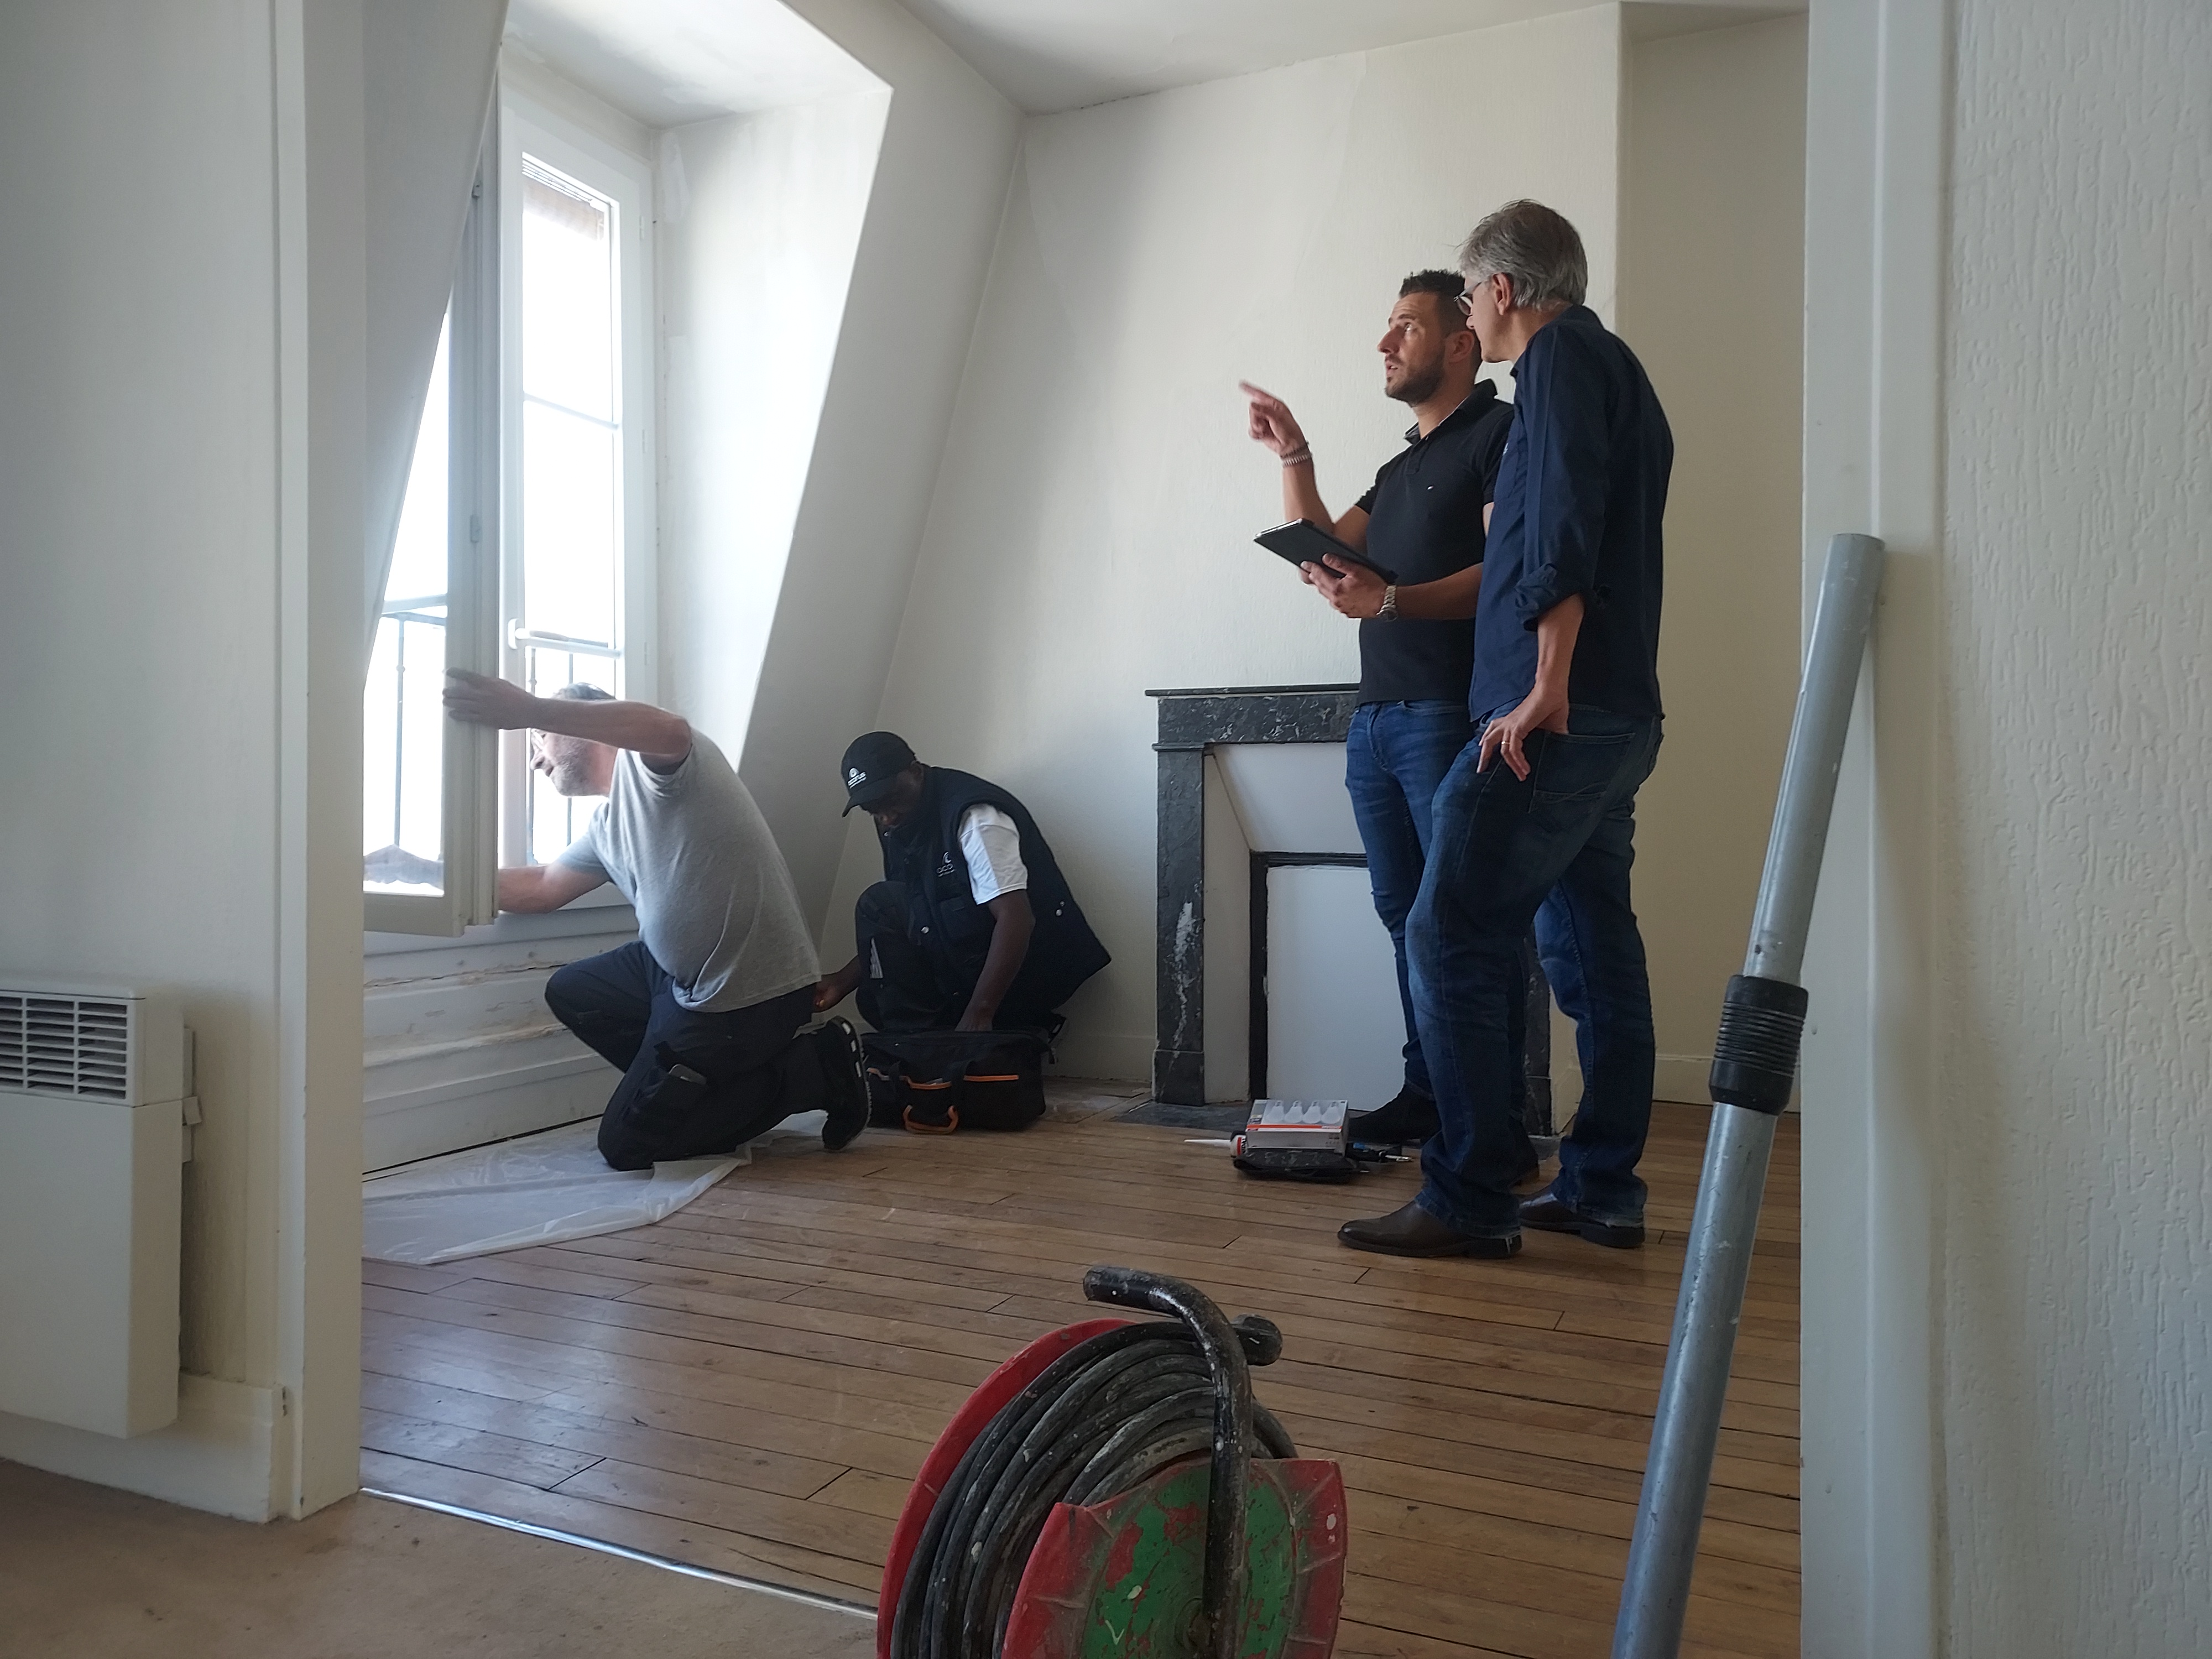 Des entreprises mandatées par la RIVP rénovent gratuitement des appartements pour les réfugiés ukrainiens dans quatre arrondissements parisiens. LP/Céline Carez